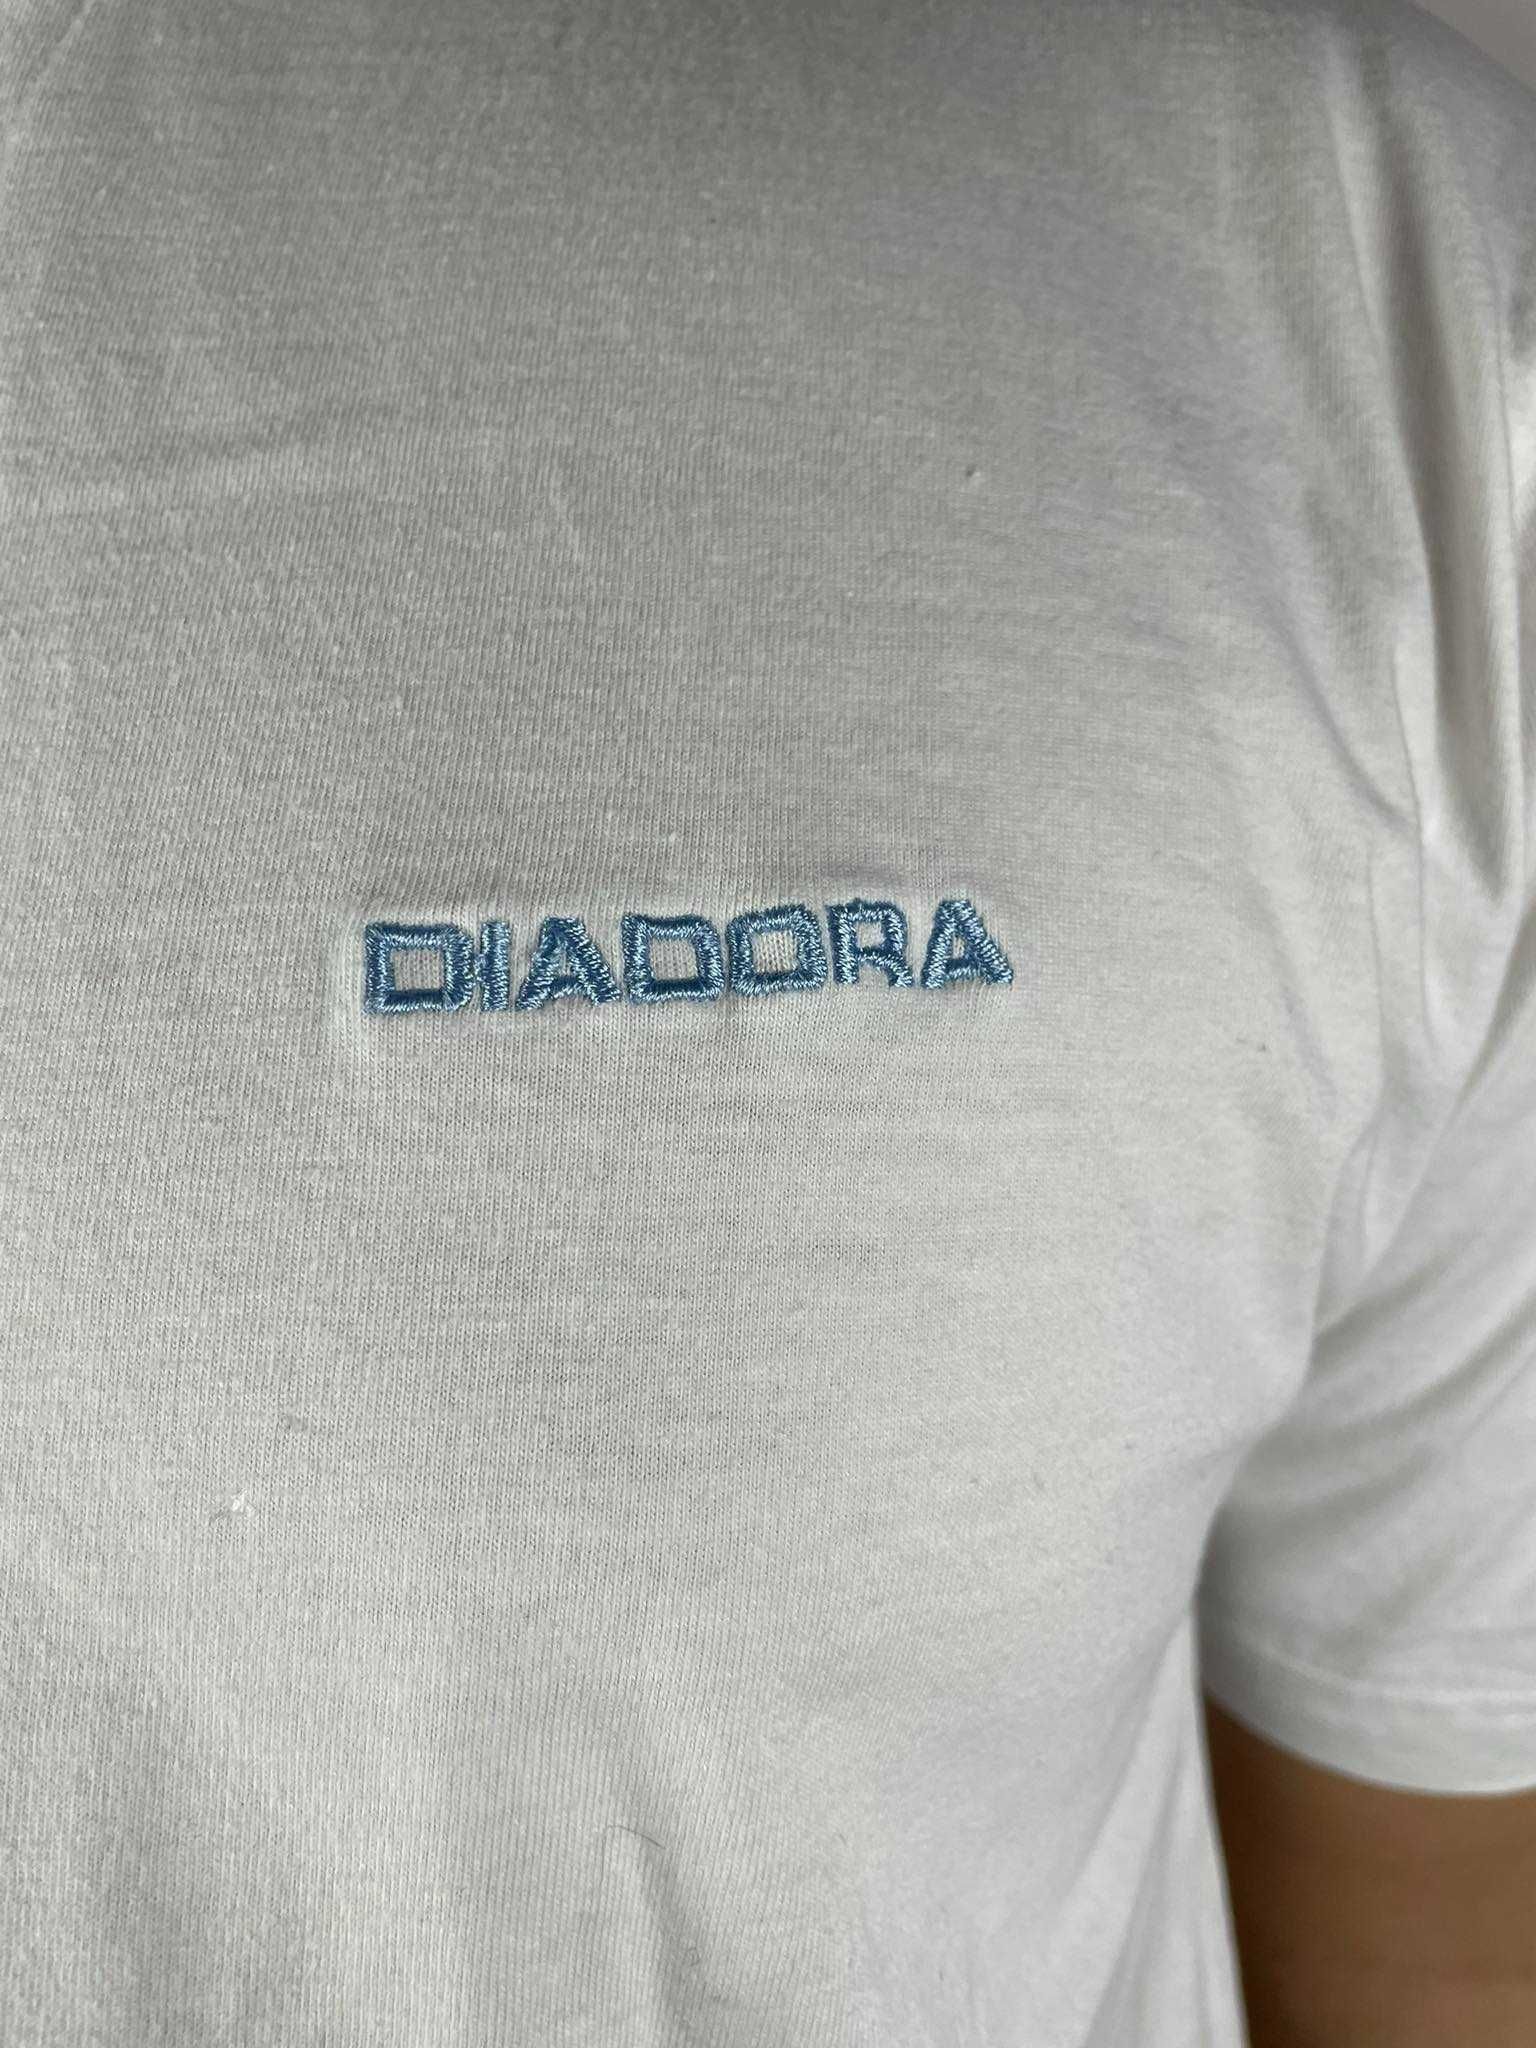 Koszulka Diadora biała XL